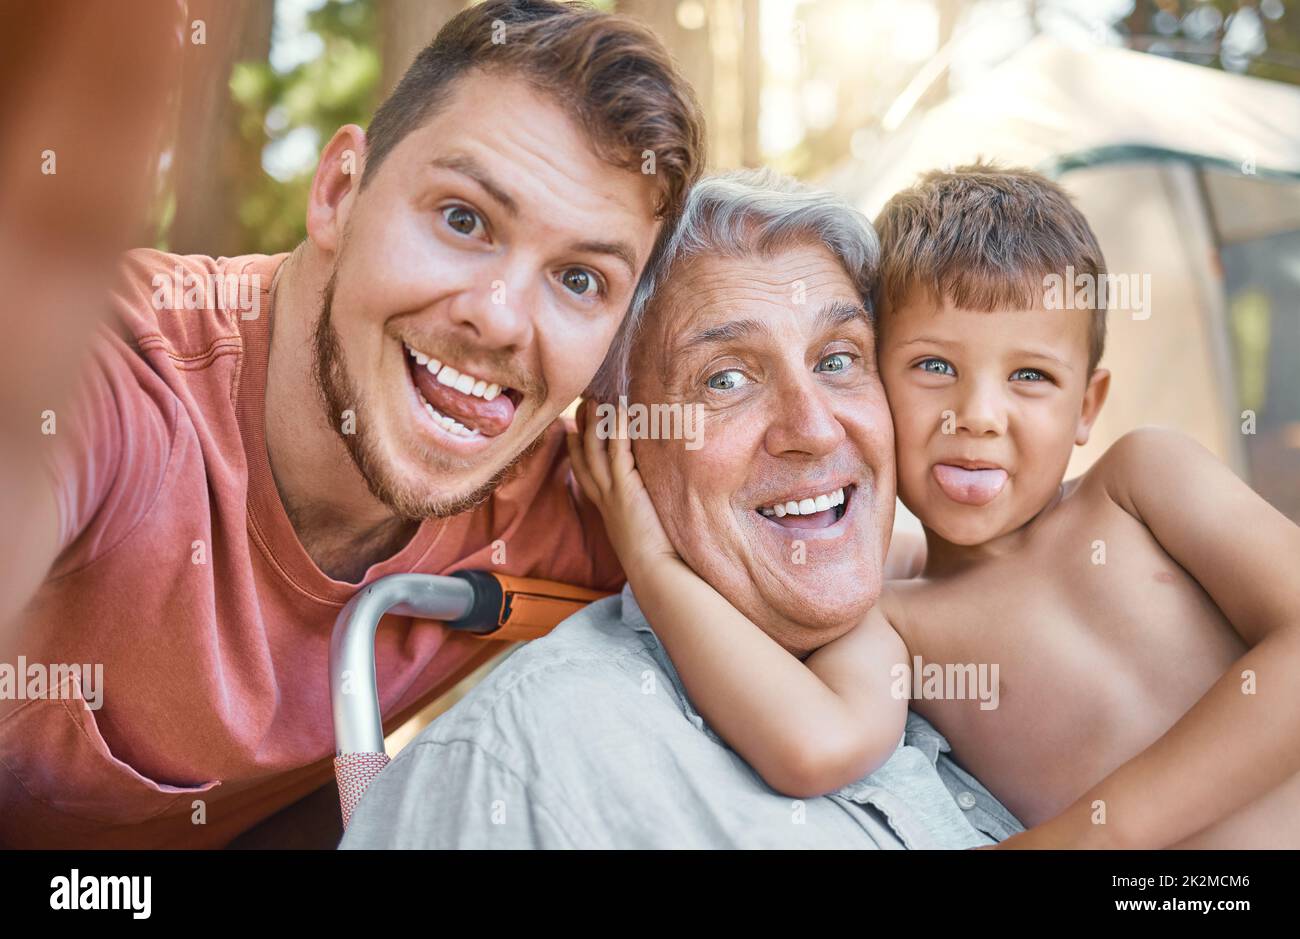 Viel Spaß für die ganze Familie. Beschnittenes Porträt eines hübschen jungen Mannes, der mit seinem Vater und seinem Sohn Selfies macht, während er im Wald kampiert. Stockfoto